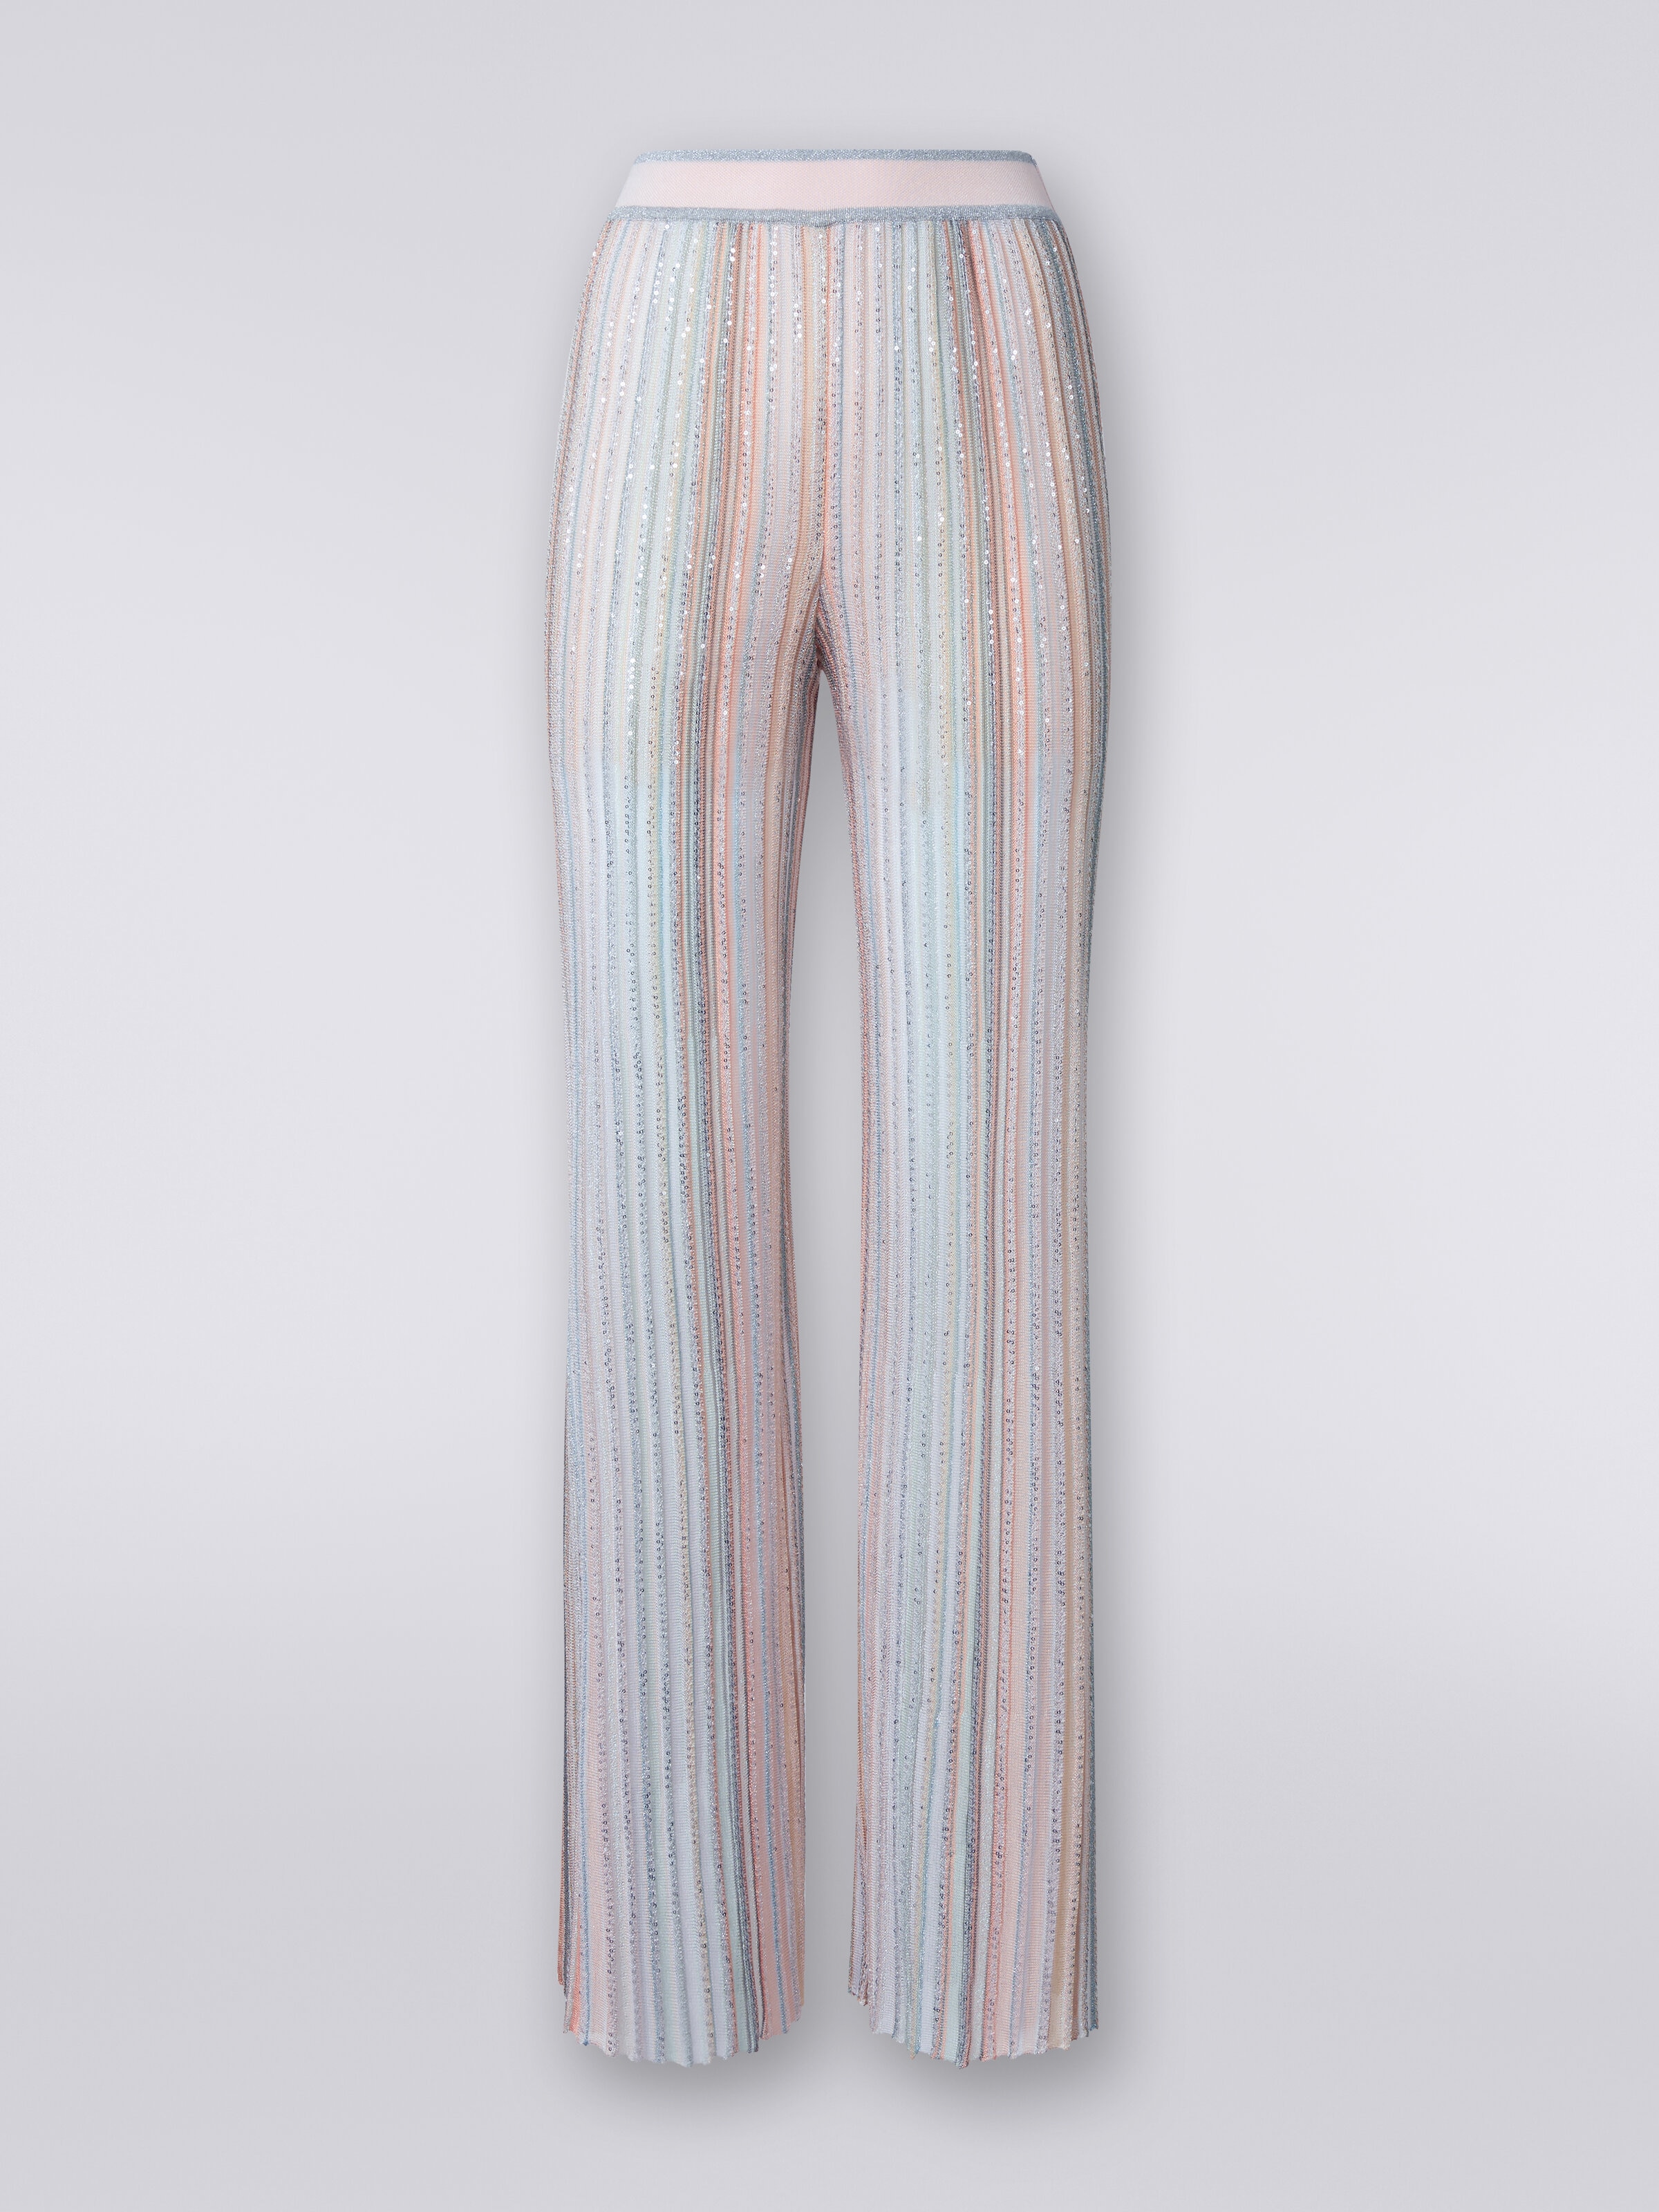 Pantaloni in maglia a righe verticali con paillettes, Multicolore  - 0